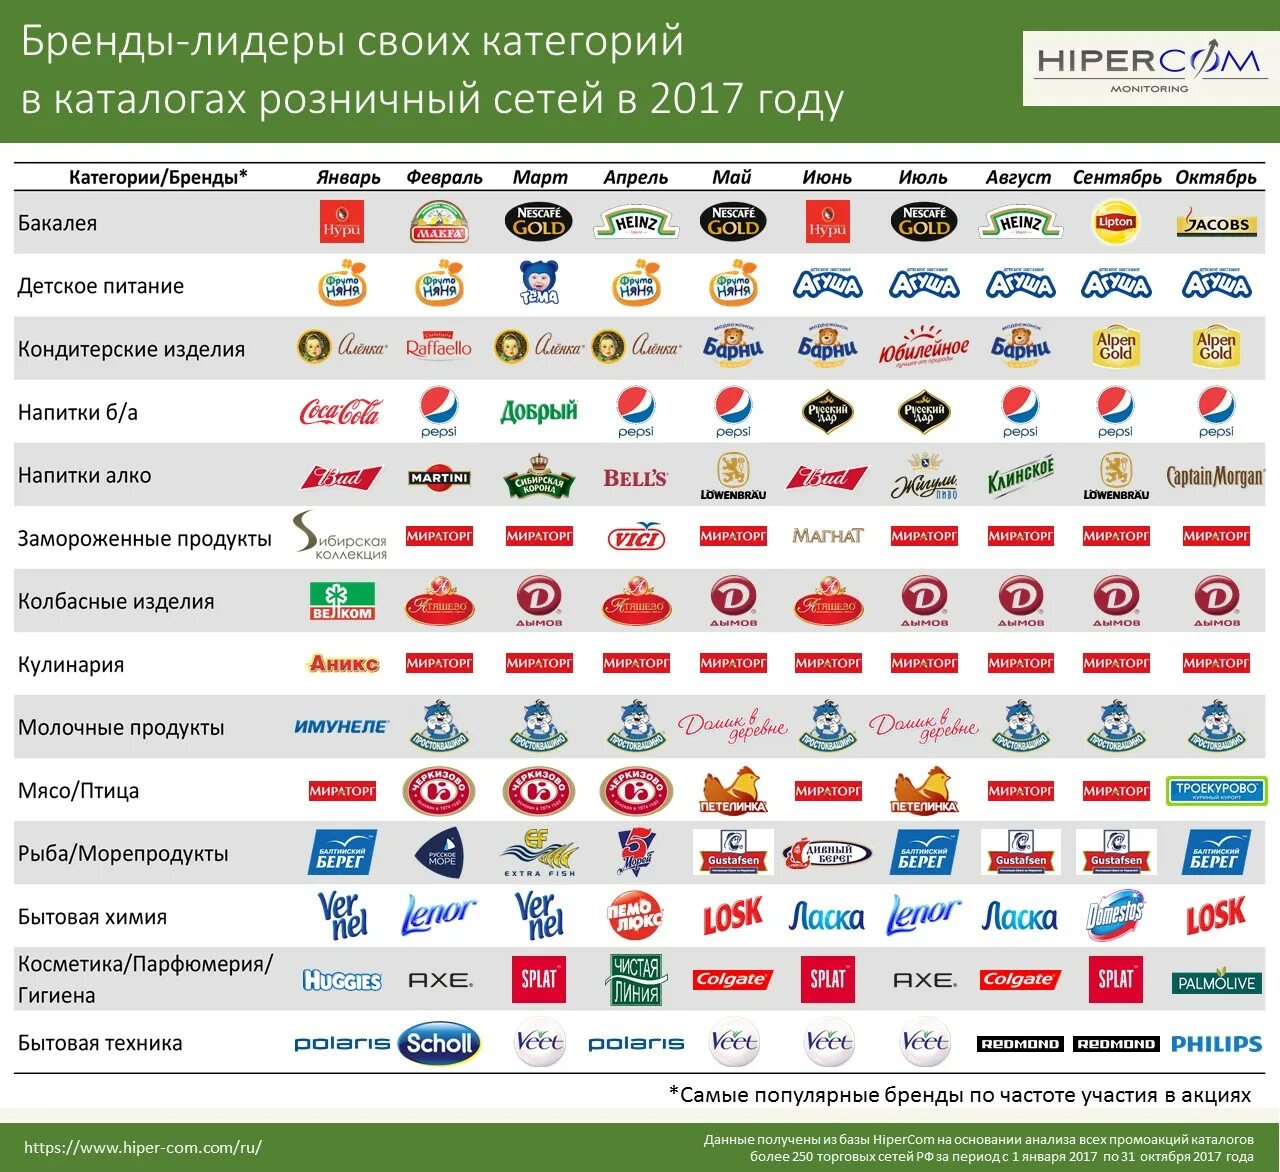 Отечественные производители список. Русские бренды. Известные торговые марки. Известные марки продуктов. Торговые бренды.